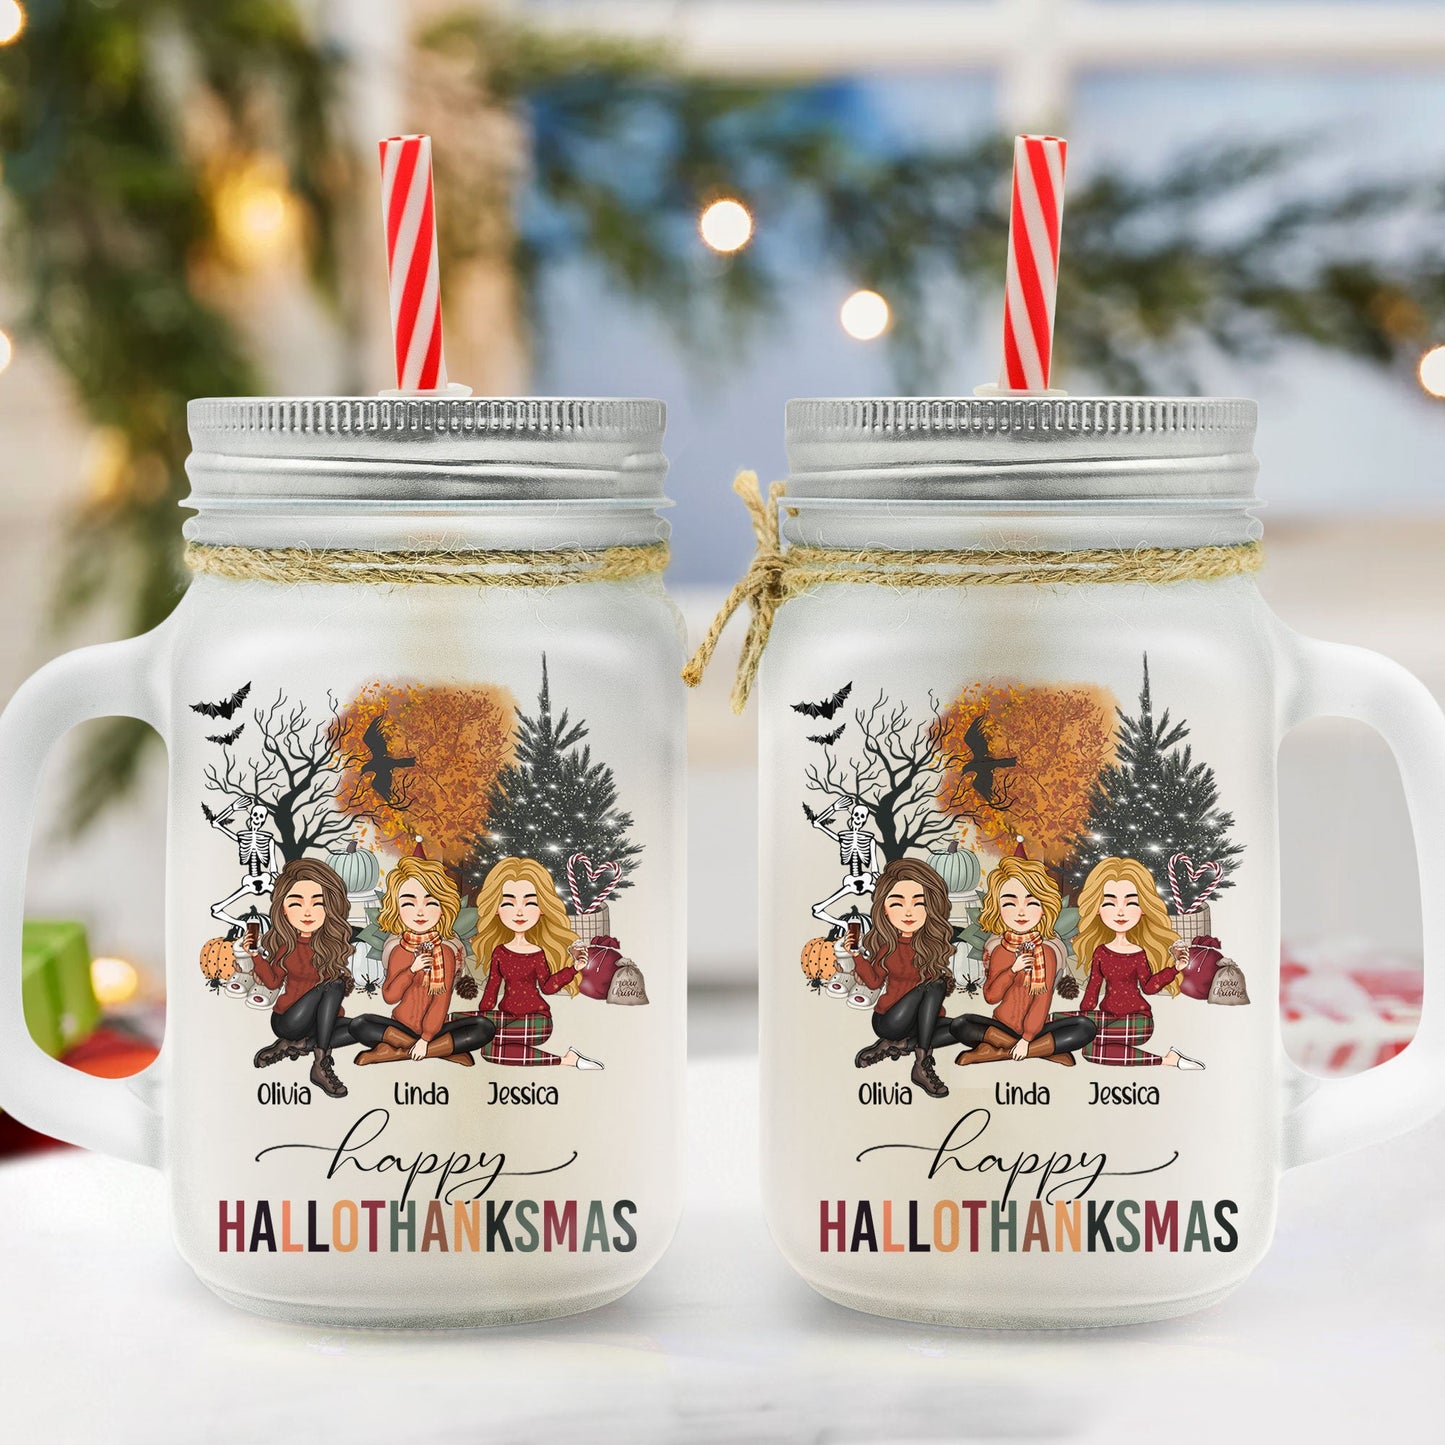 Happy Hallothanksmas Besties Friendship - Personalized Mason Jar Cup With Straw